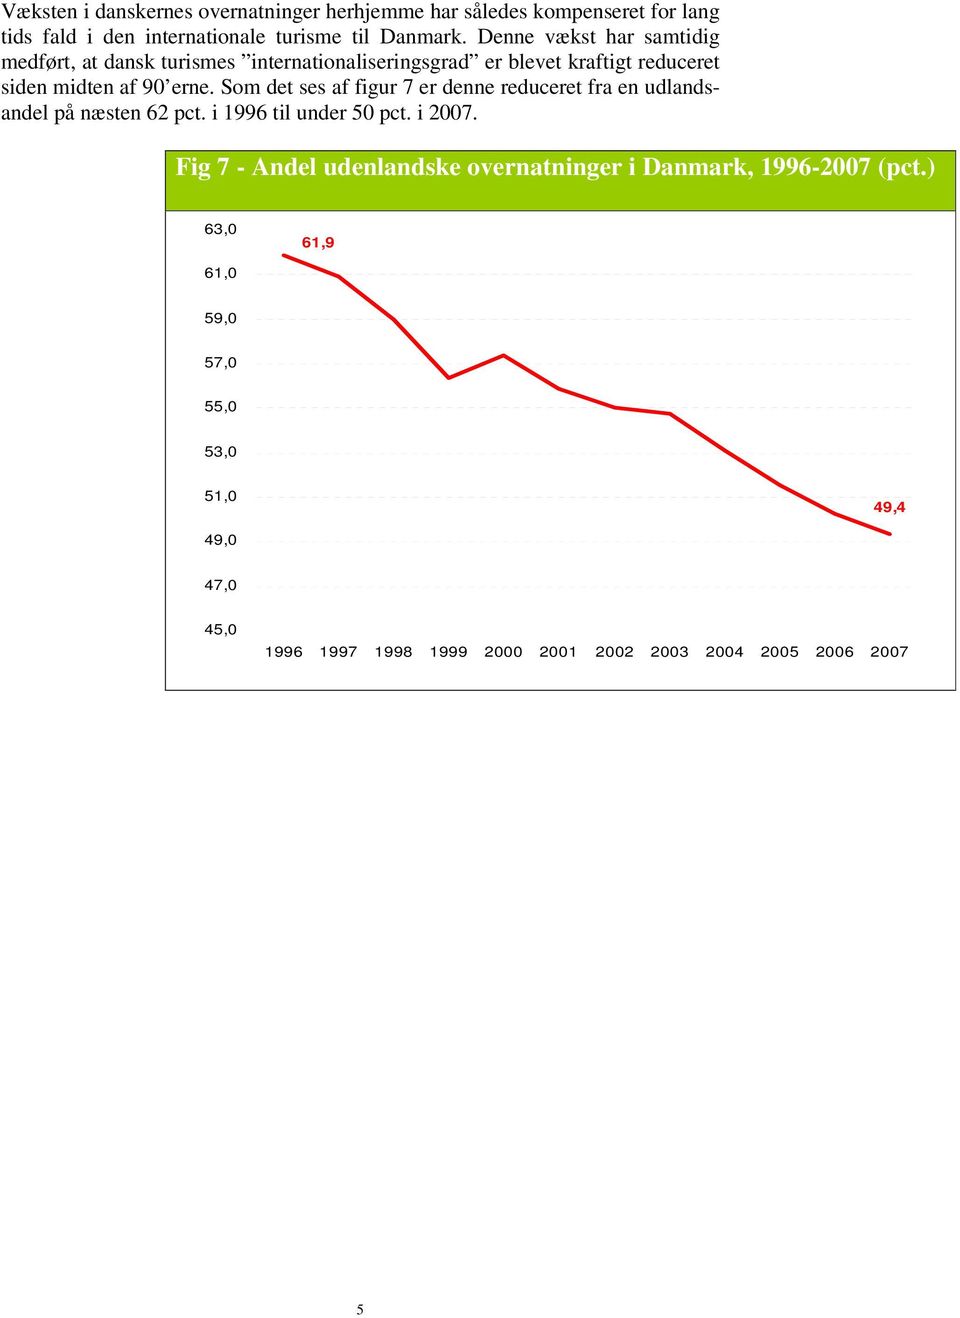 erne. Som det ses af figur 7 er denne reduceret fra en udlandsandel på næsten 62 pct. i 1996 til under 50 pct. i 2007.